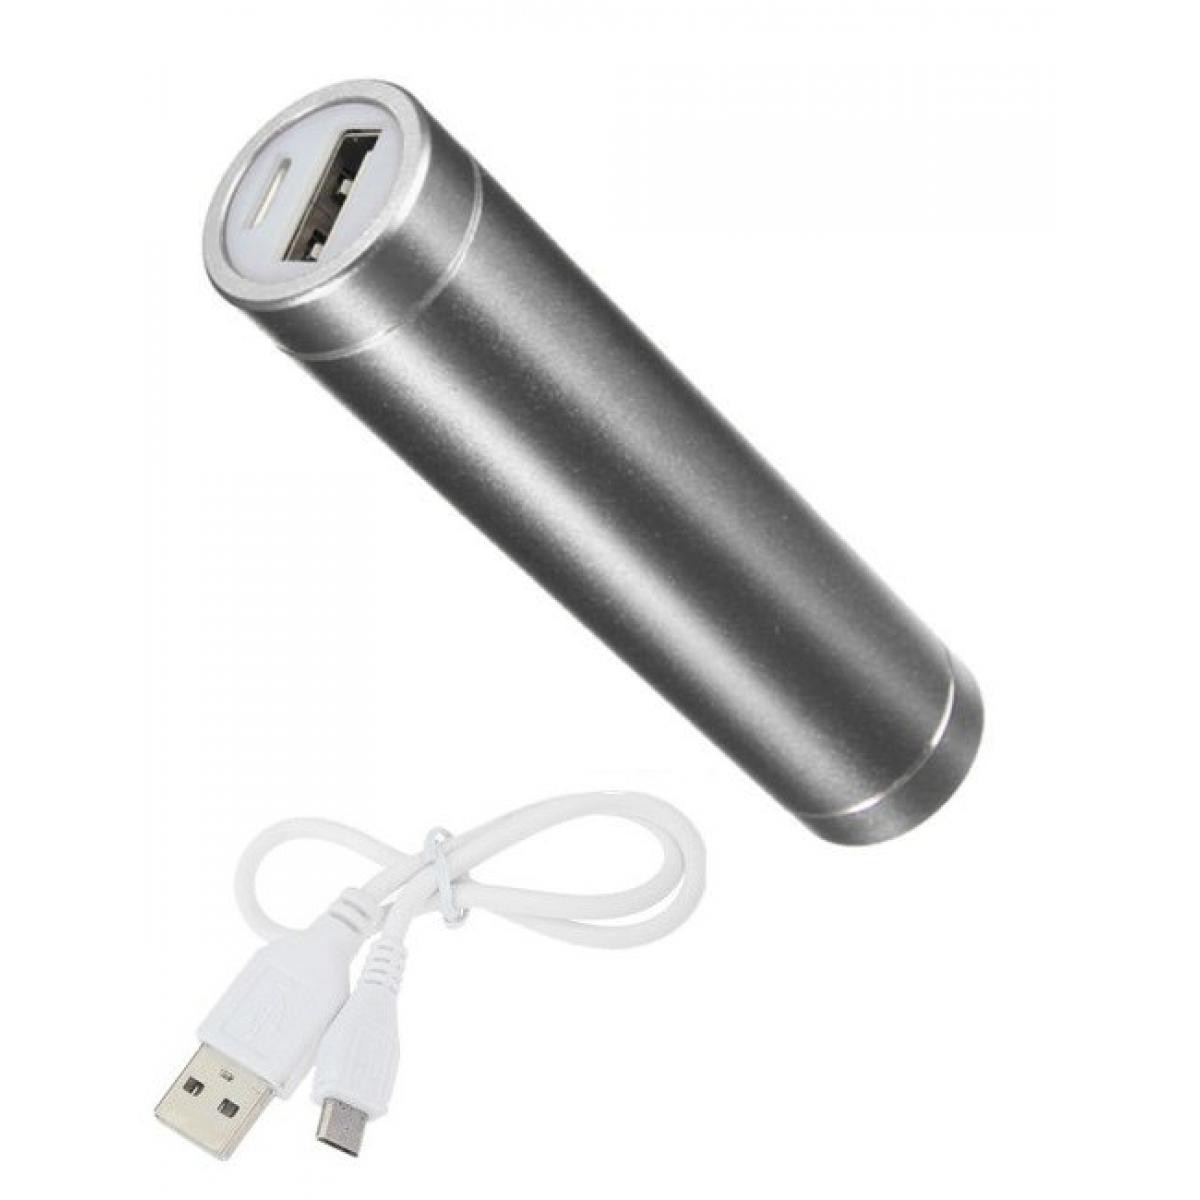 Shot - Batterie Chargeur Externe pour OPPO Find X Power Bank 2600mAh avec Cable USB/Mirco USB Secours Telephone (ARGENT) - Chargeur secteur téléphone